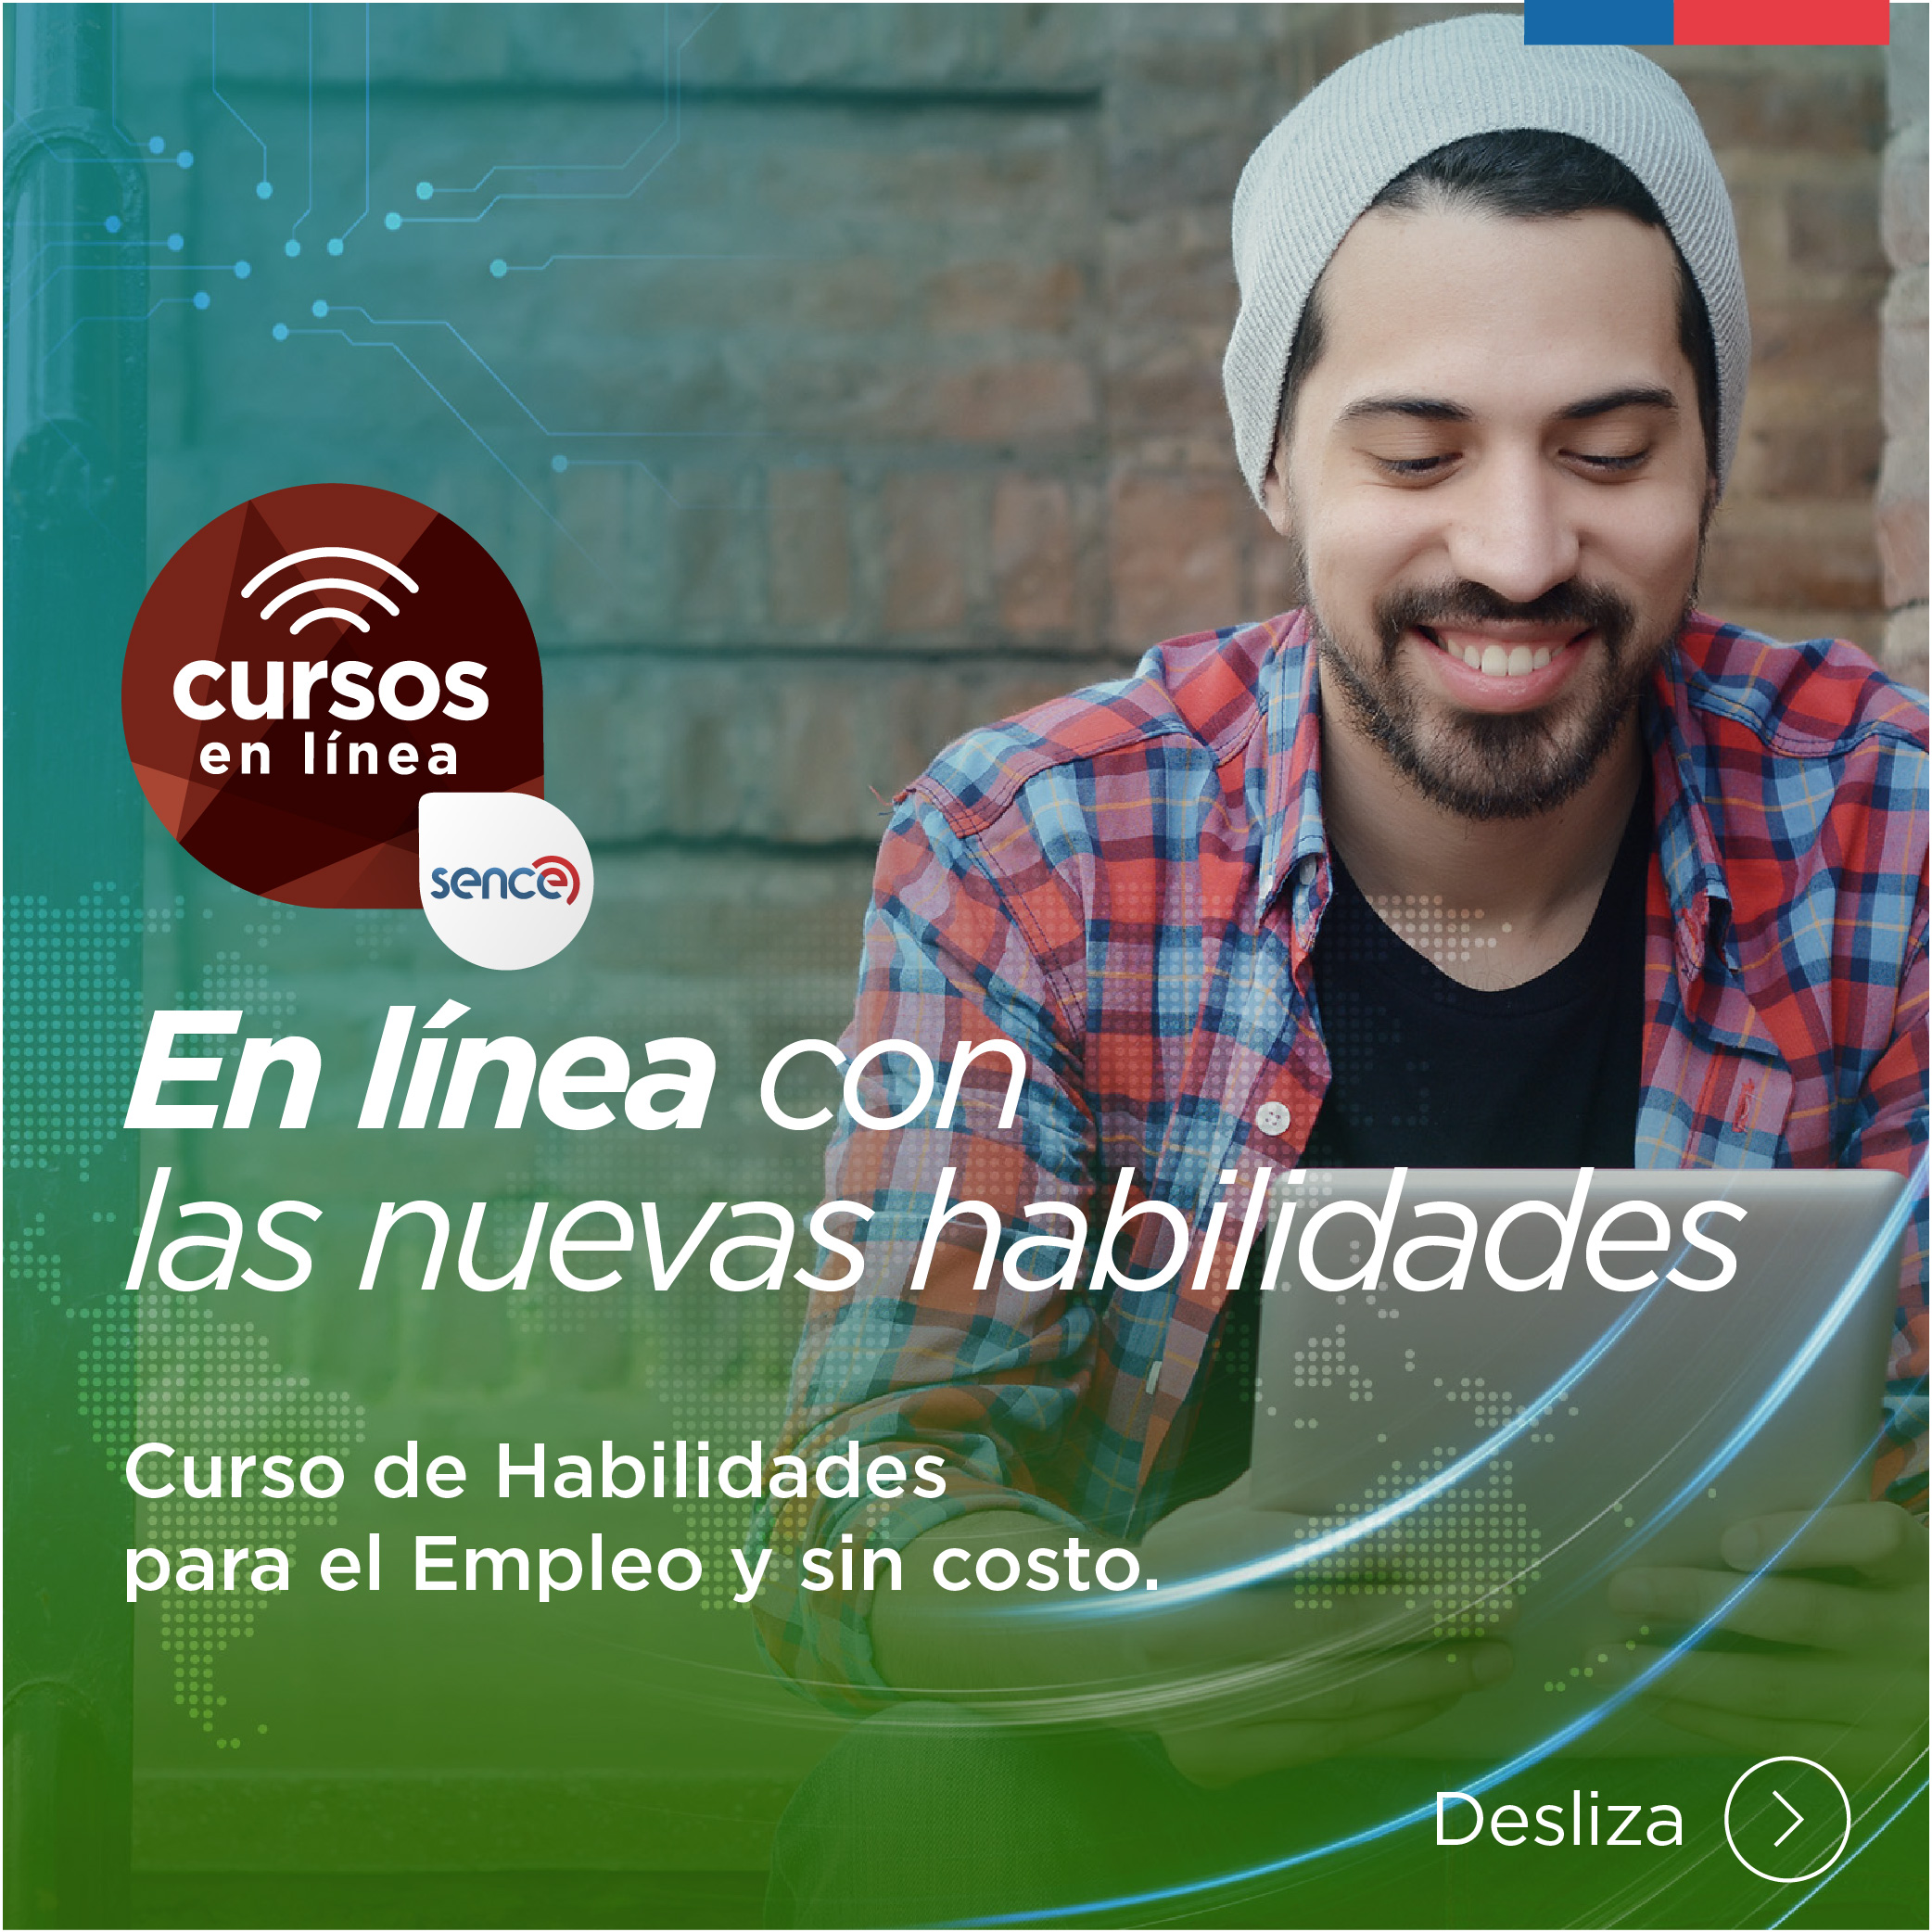 Sence y Movistar Chile lanzan 12 cursos en línea sin costo